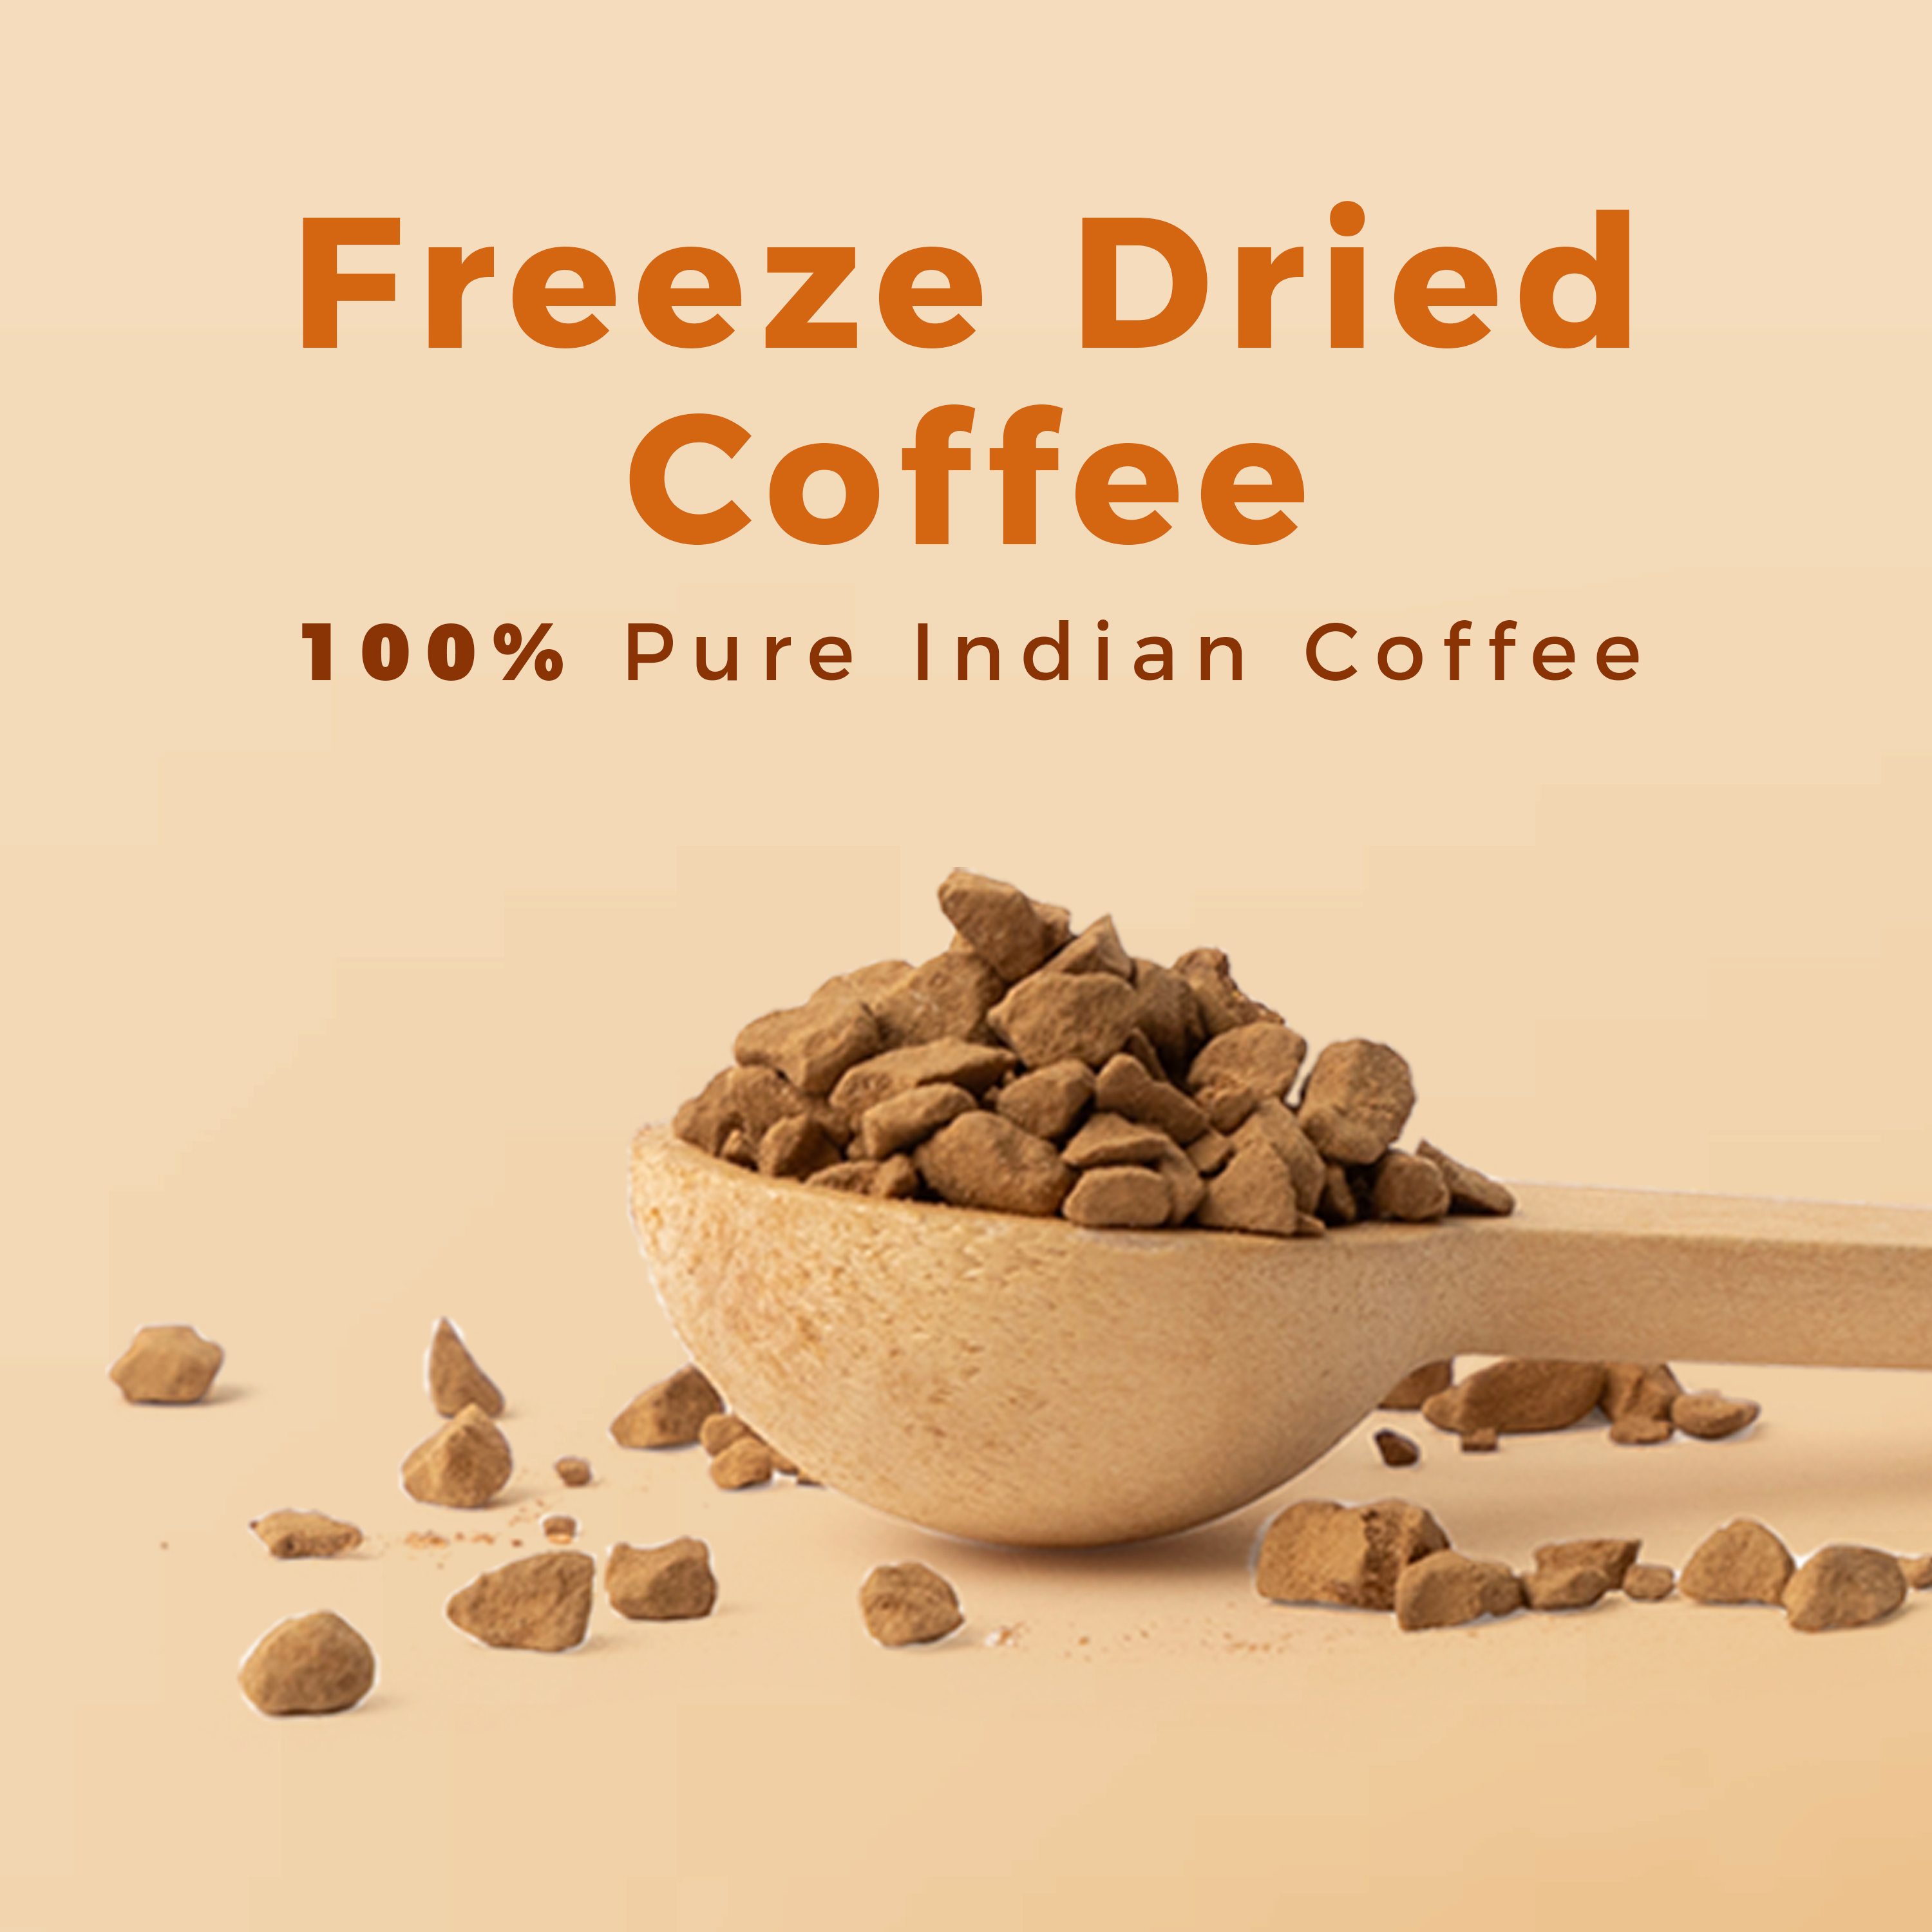 Original Wellness Instant Coffee - 50 gm Jar + Free Mug